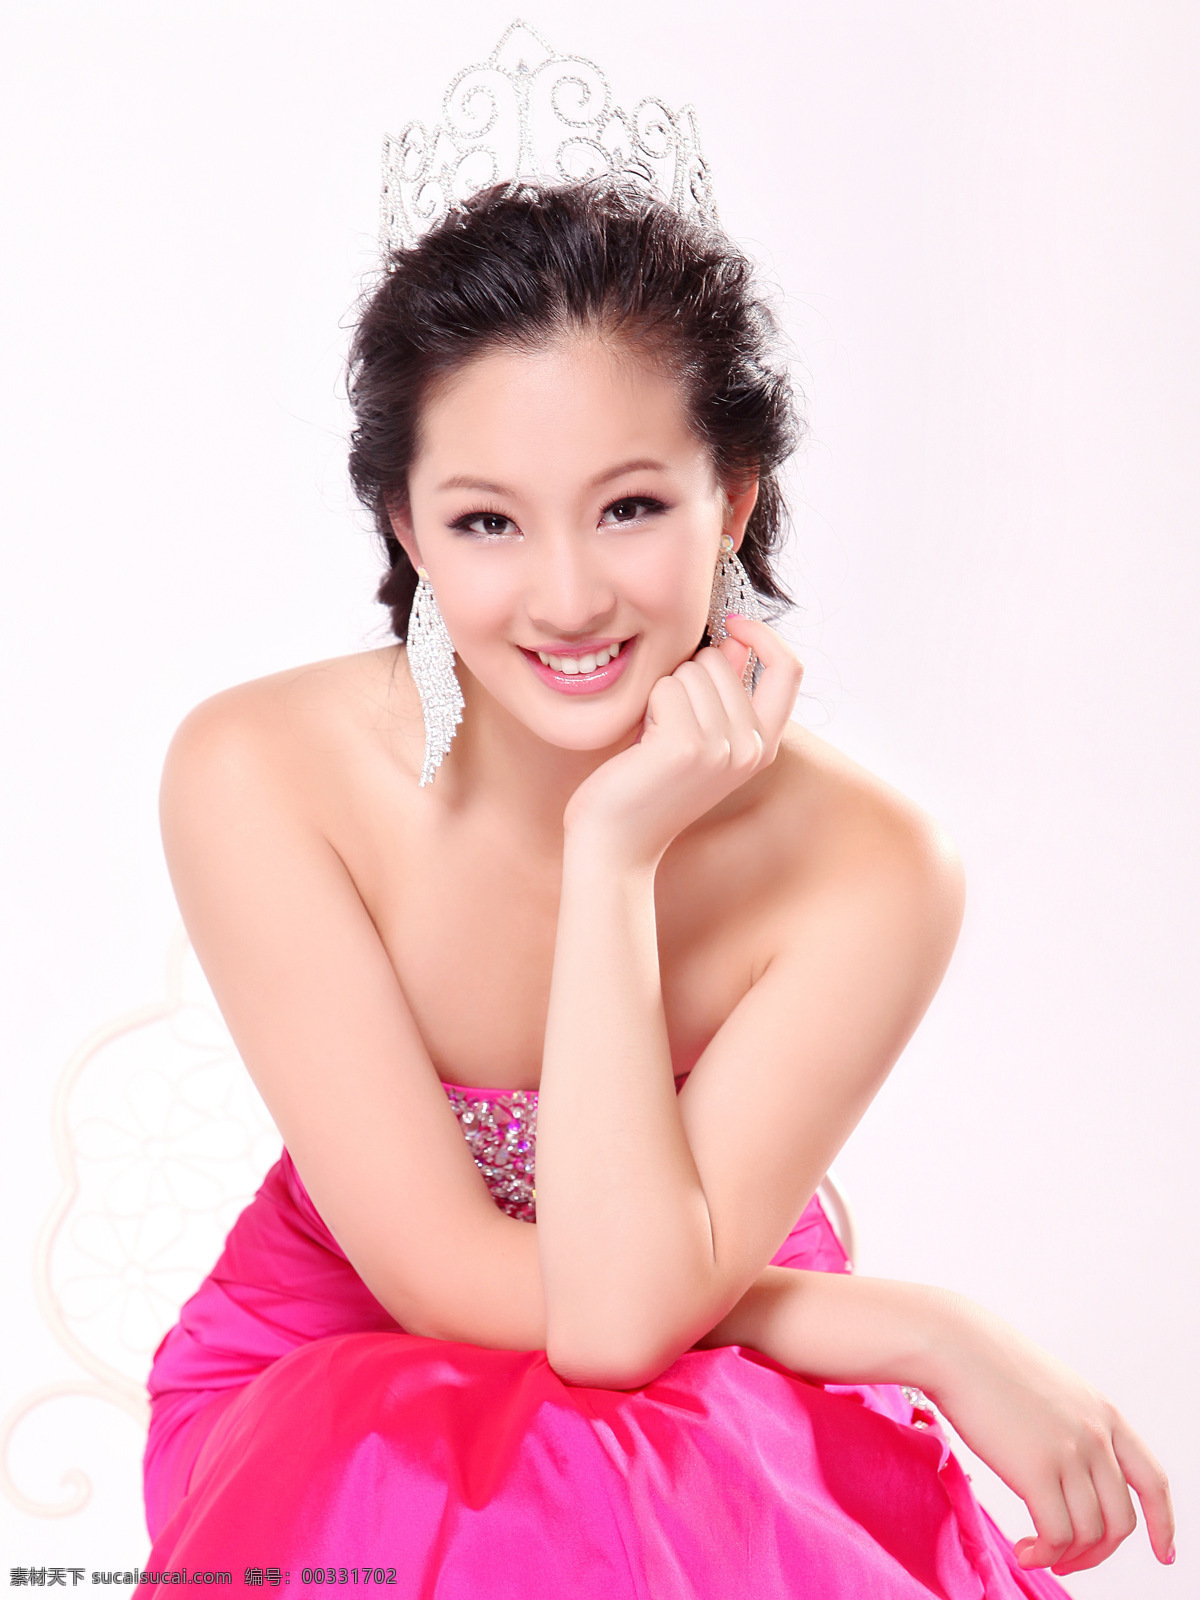 崔安娜 美国 华裔 小姐 冠军 获奖照 明星偶像 人物图库